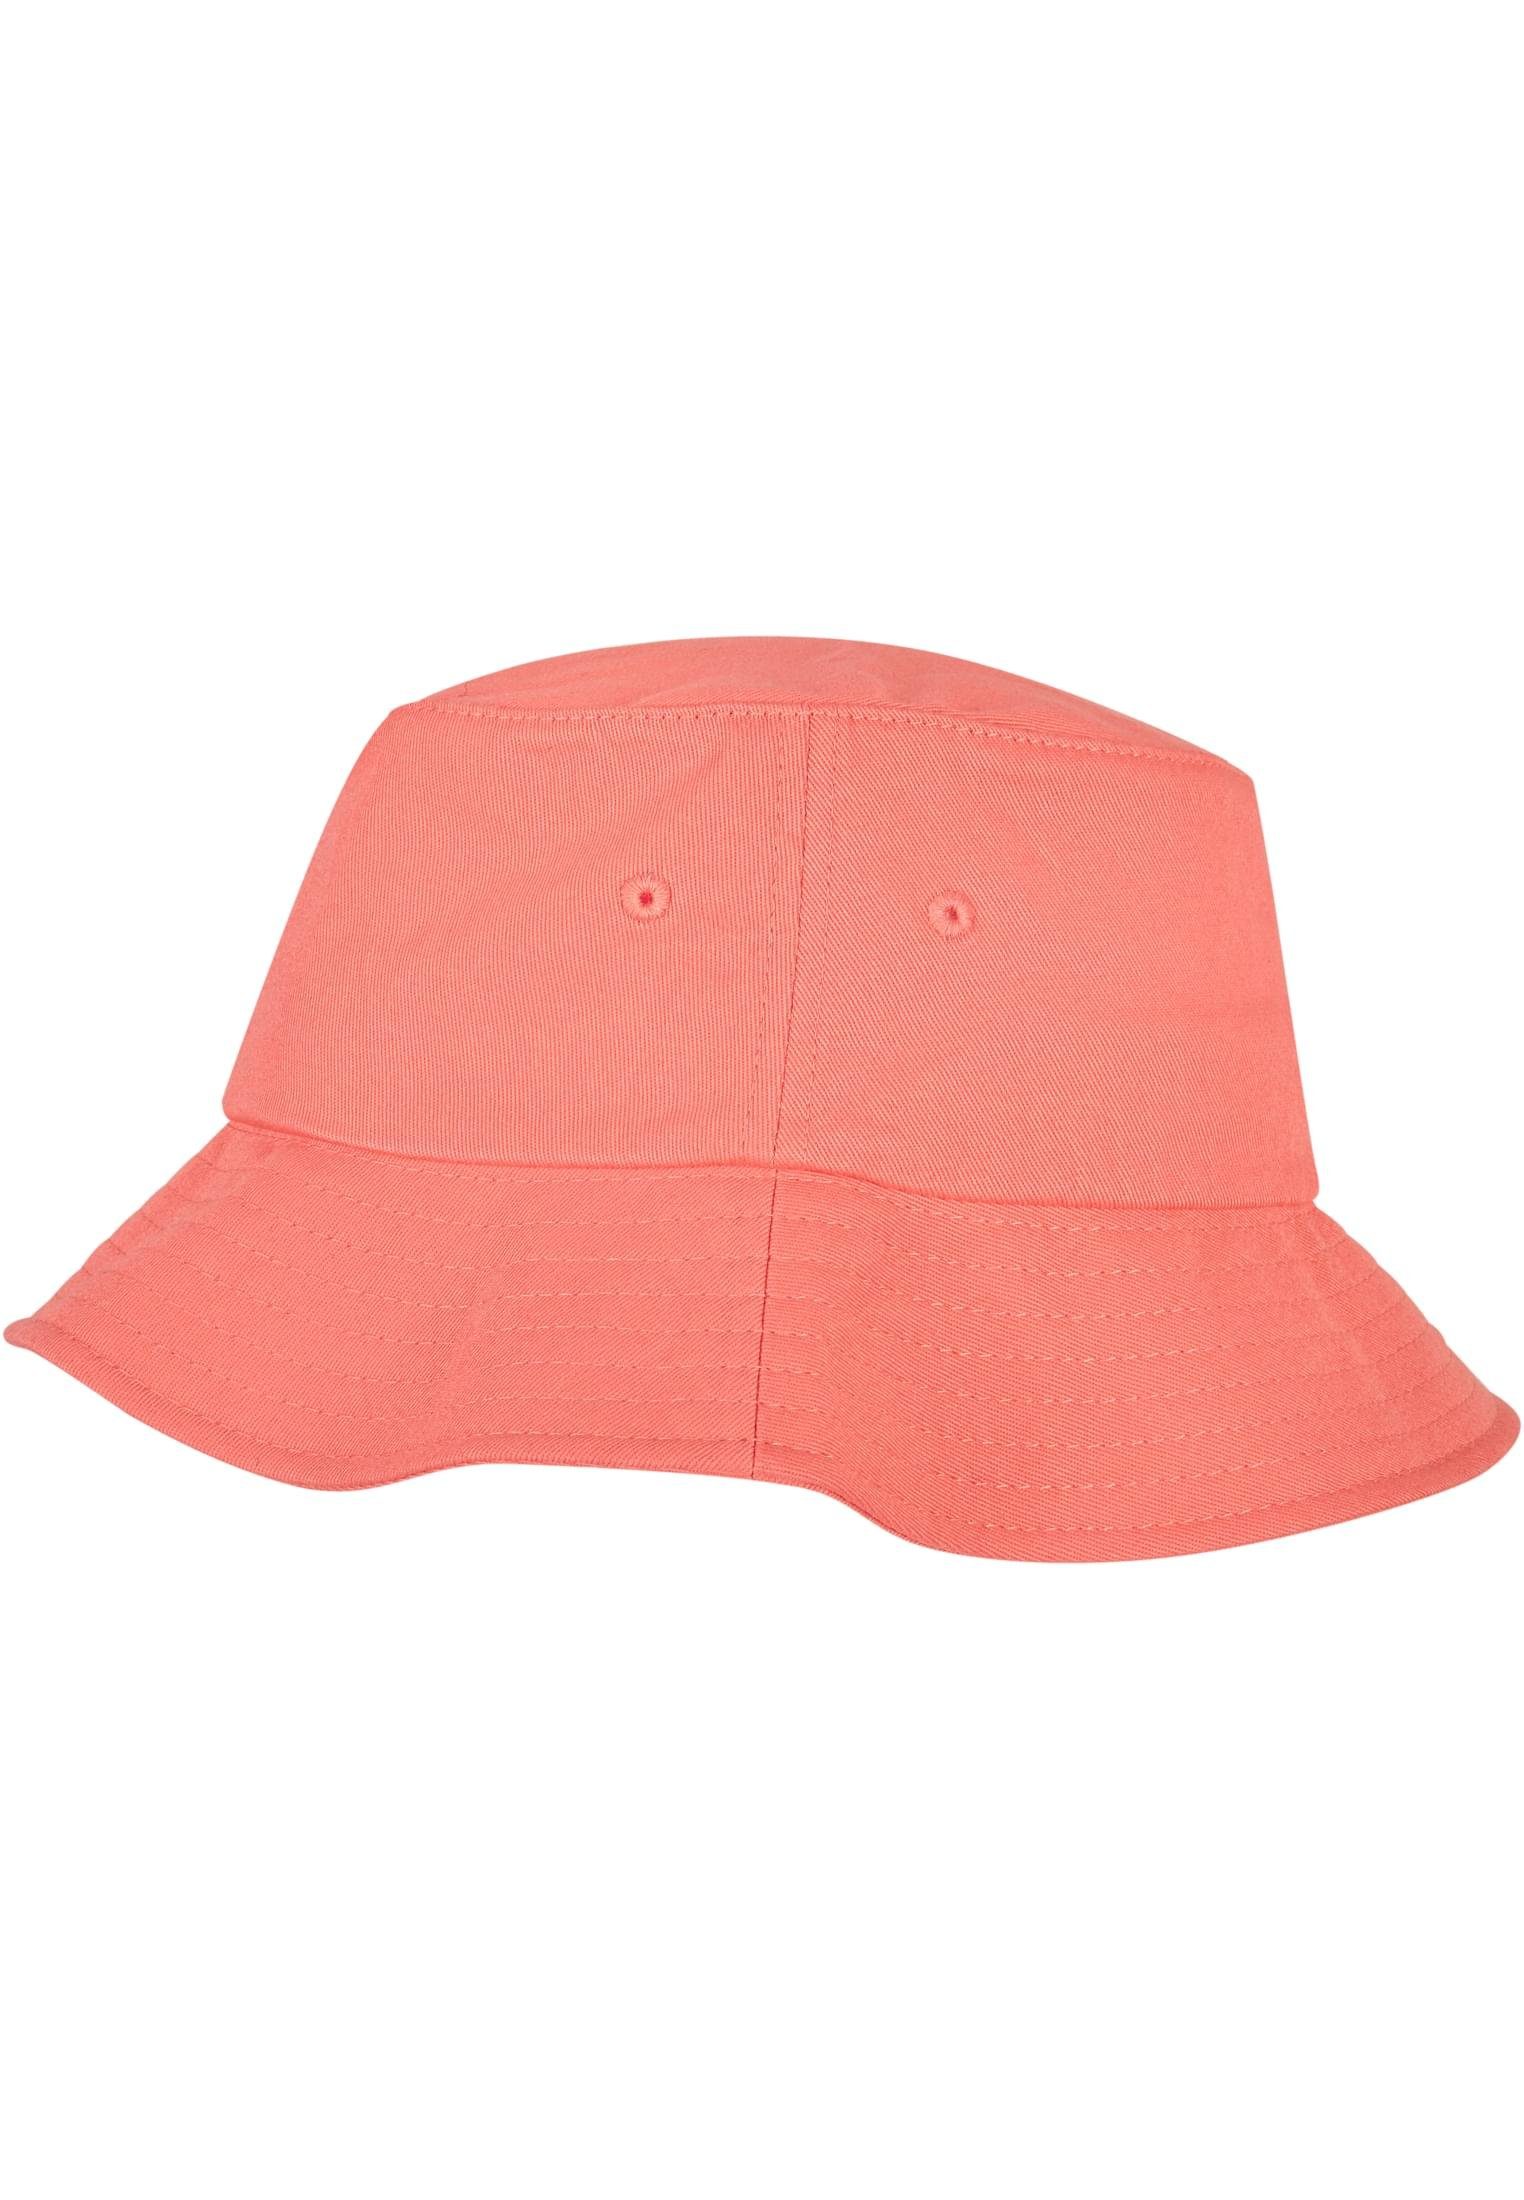 Twill Accessoires Flexfit Cotton Flex spicedcoral Hat Cap Bucket Flexfit